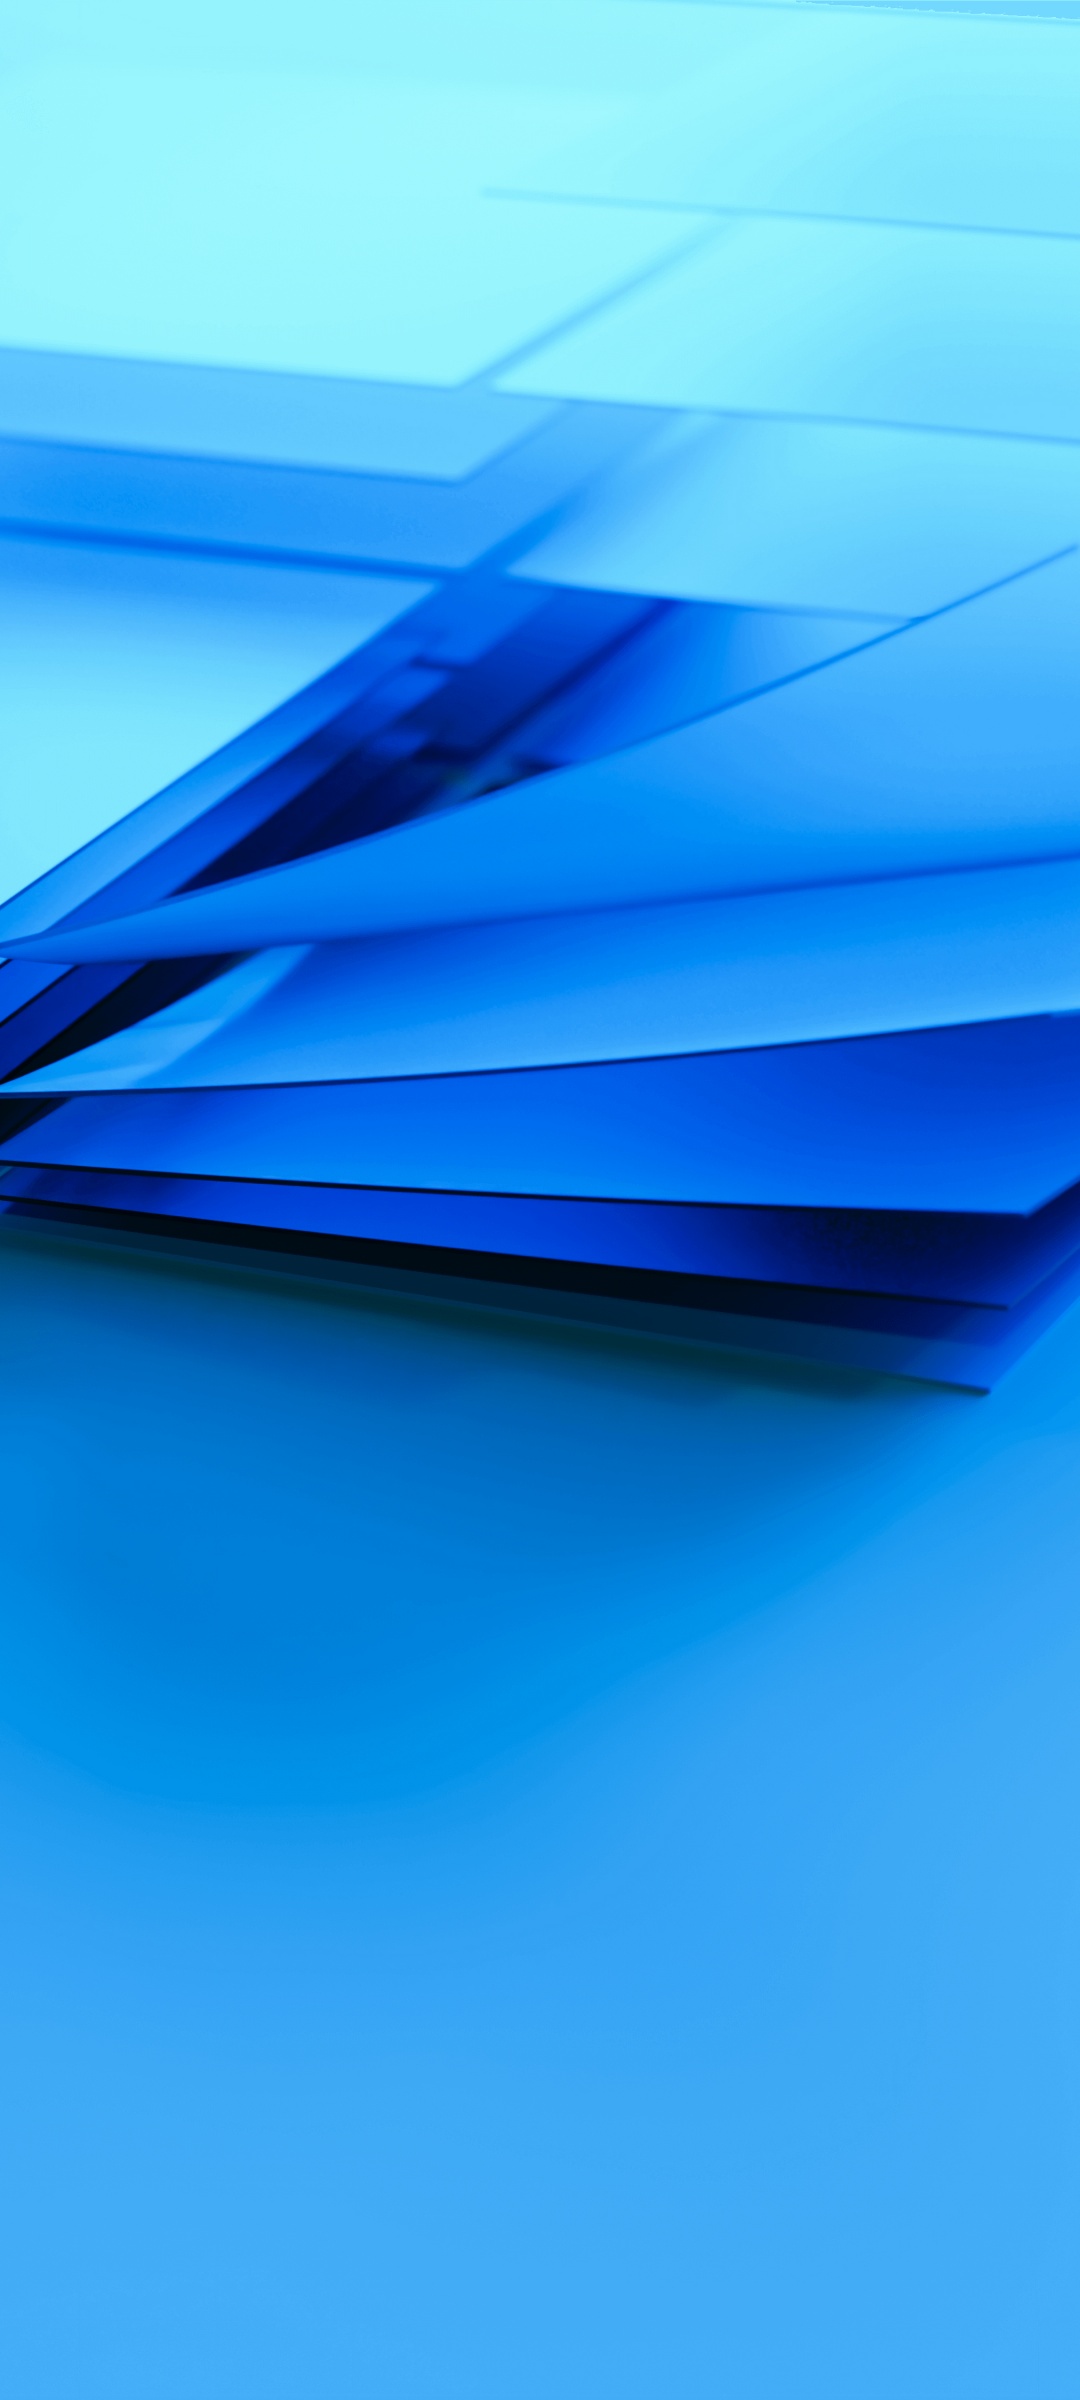 Windows logo là biểu tượng mang tính biểu tượng của hệ điều hành Windows. Hình nền Windows logo wallpaper sẽ đem lại cho bạn cảm giác năng động và hiện đại trên màn hình máy tính của mình. Hãy kiểm tra hình ảnh để tìm những mẫu thiết kế phong cách độc đáo và chuyên nghiệp.